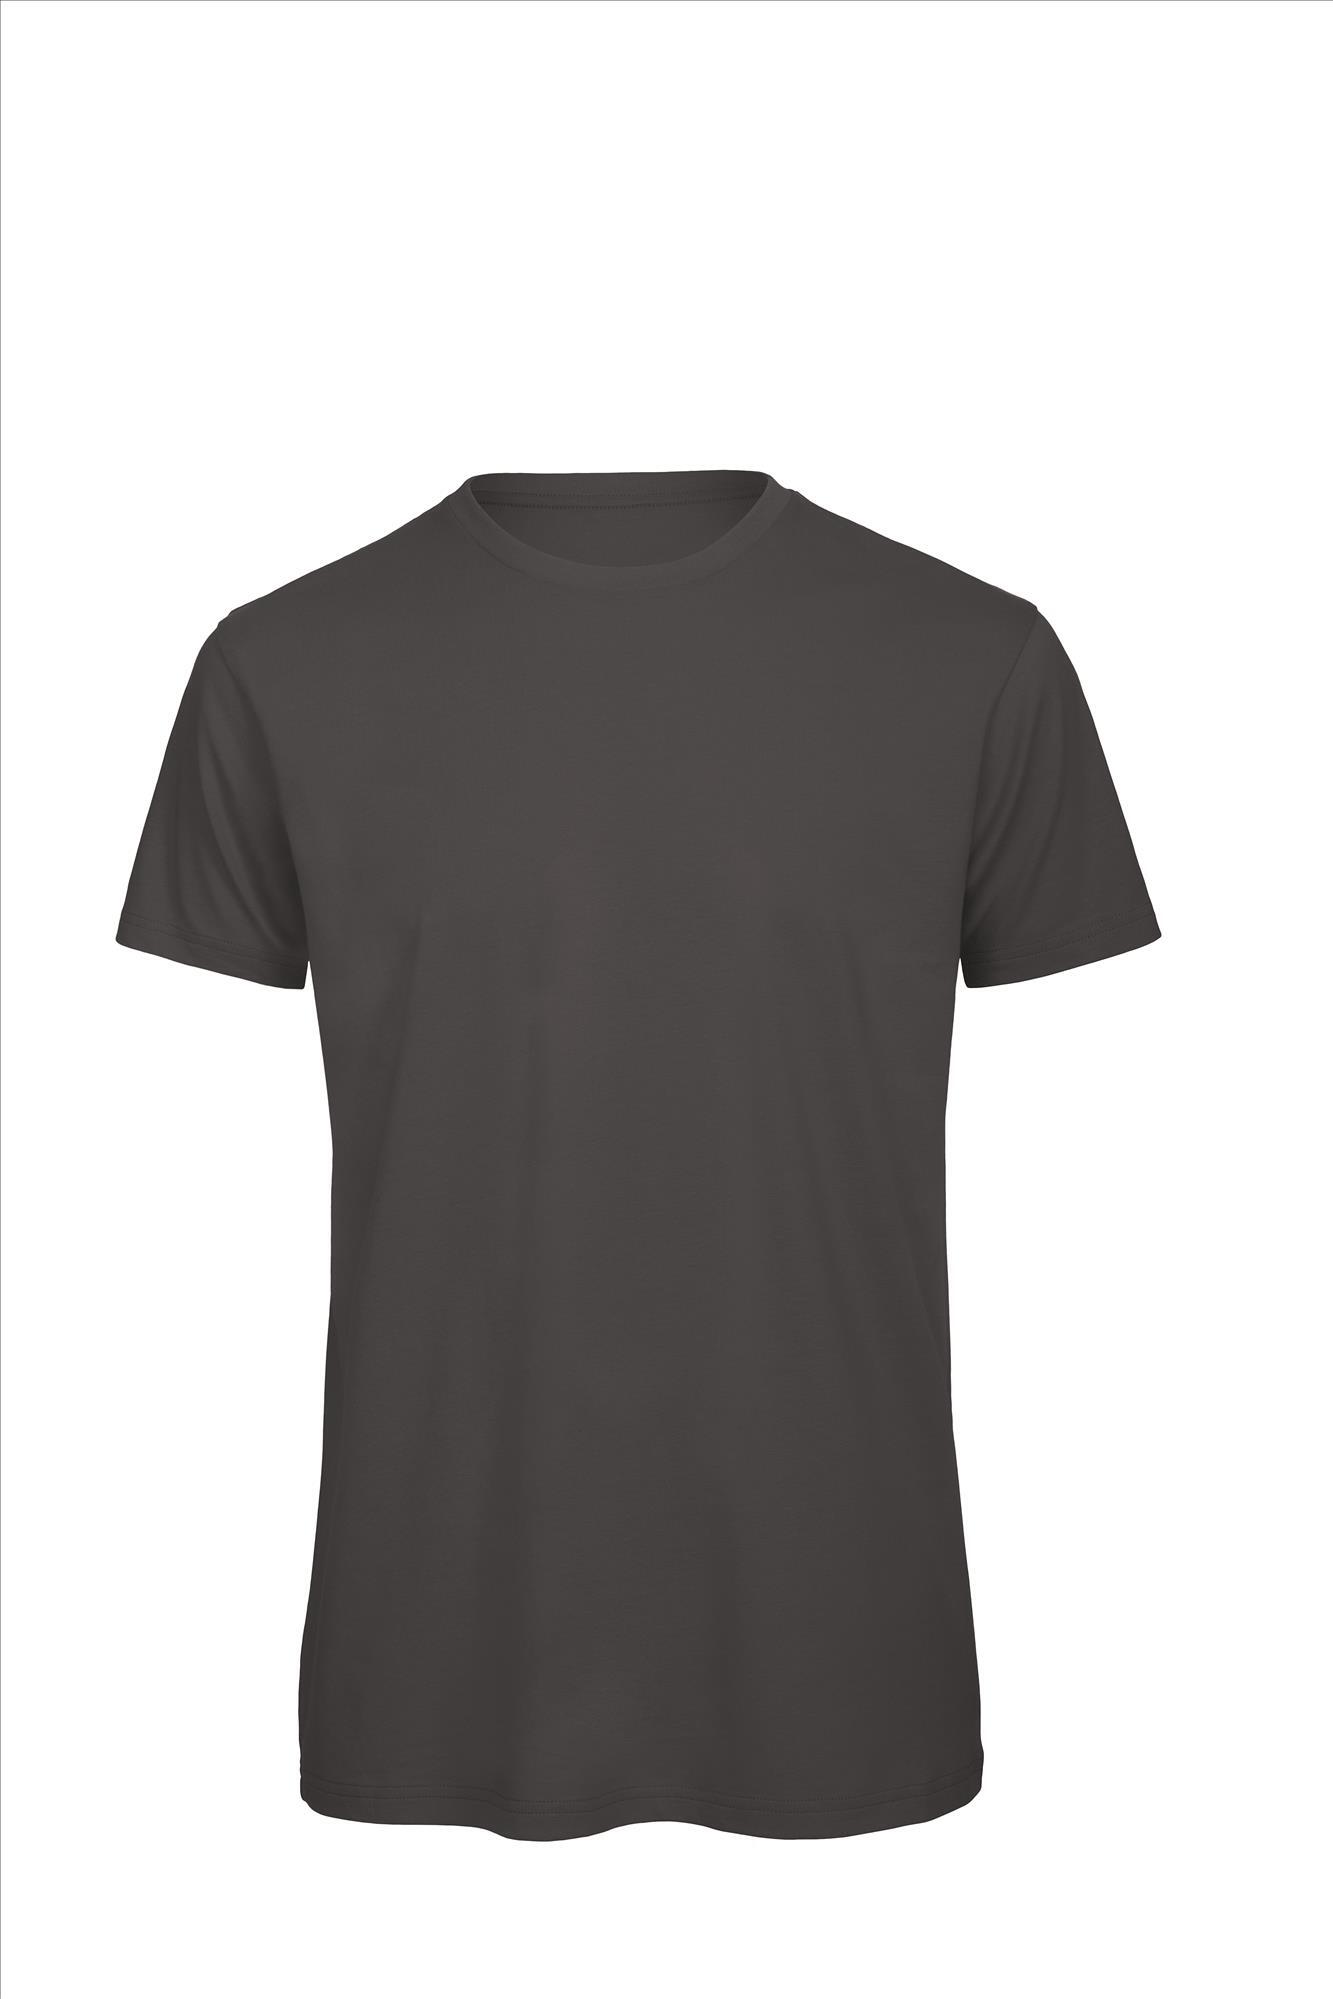 Heren T-shirt donkergrijs te personaliseren bedrukbaar duurzaam shirt